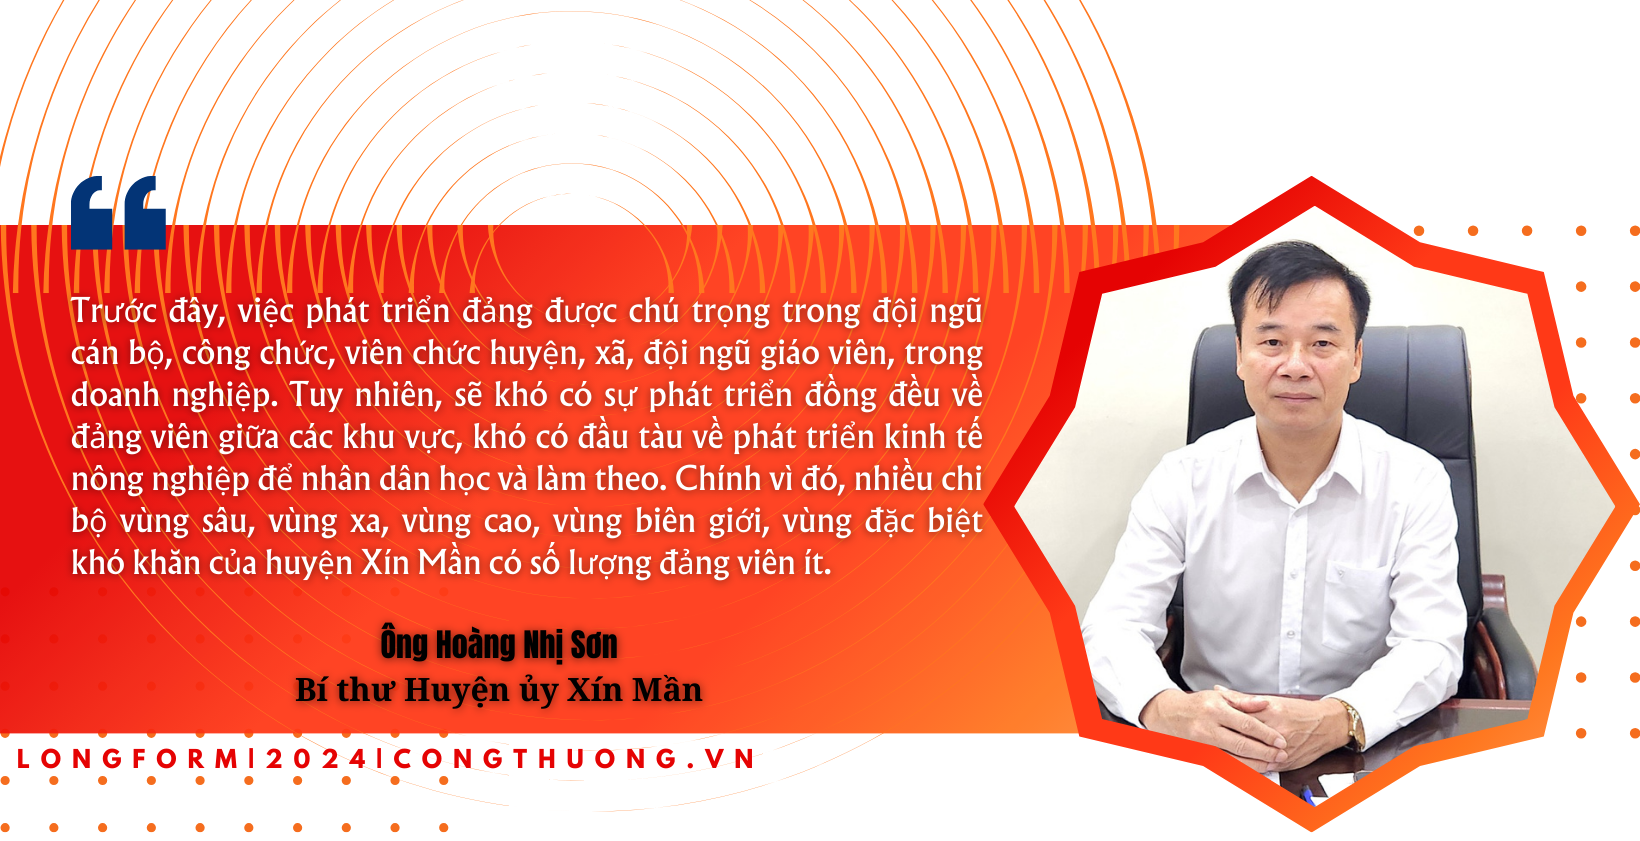 Longform | Xây dựng cơ sở Đảng gắn với phát triển kinh tế vùng biên: Câu chuyện từ huyện Xín Mần